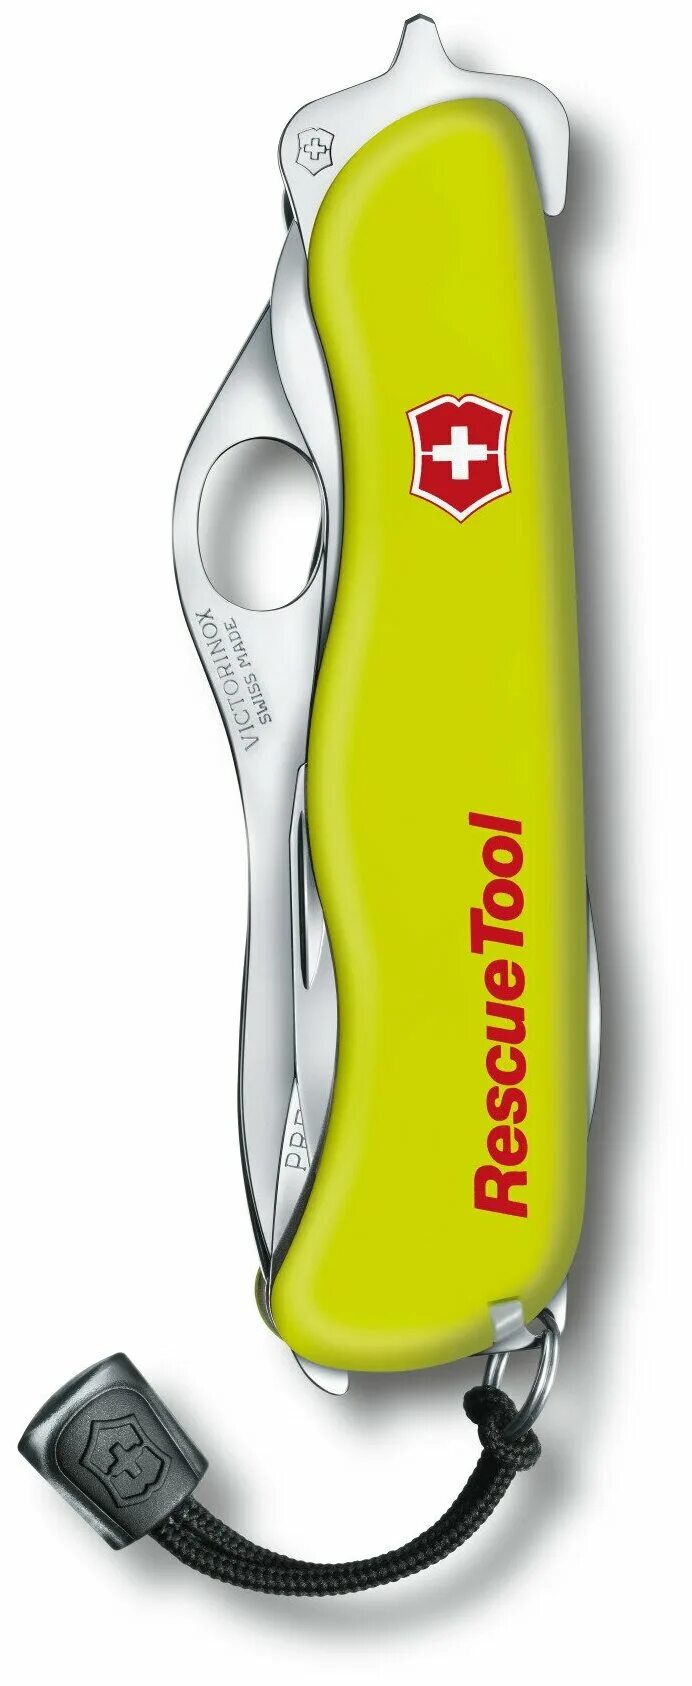 Викторинокс Рескью. 0.8623.MWN нож перочинный Rescue Tool. Викторинокс спасатель. Нож Victorinox Rescue Tool one hand, 111 мм, 14 функций, желтый. Rescue tool